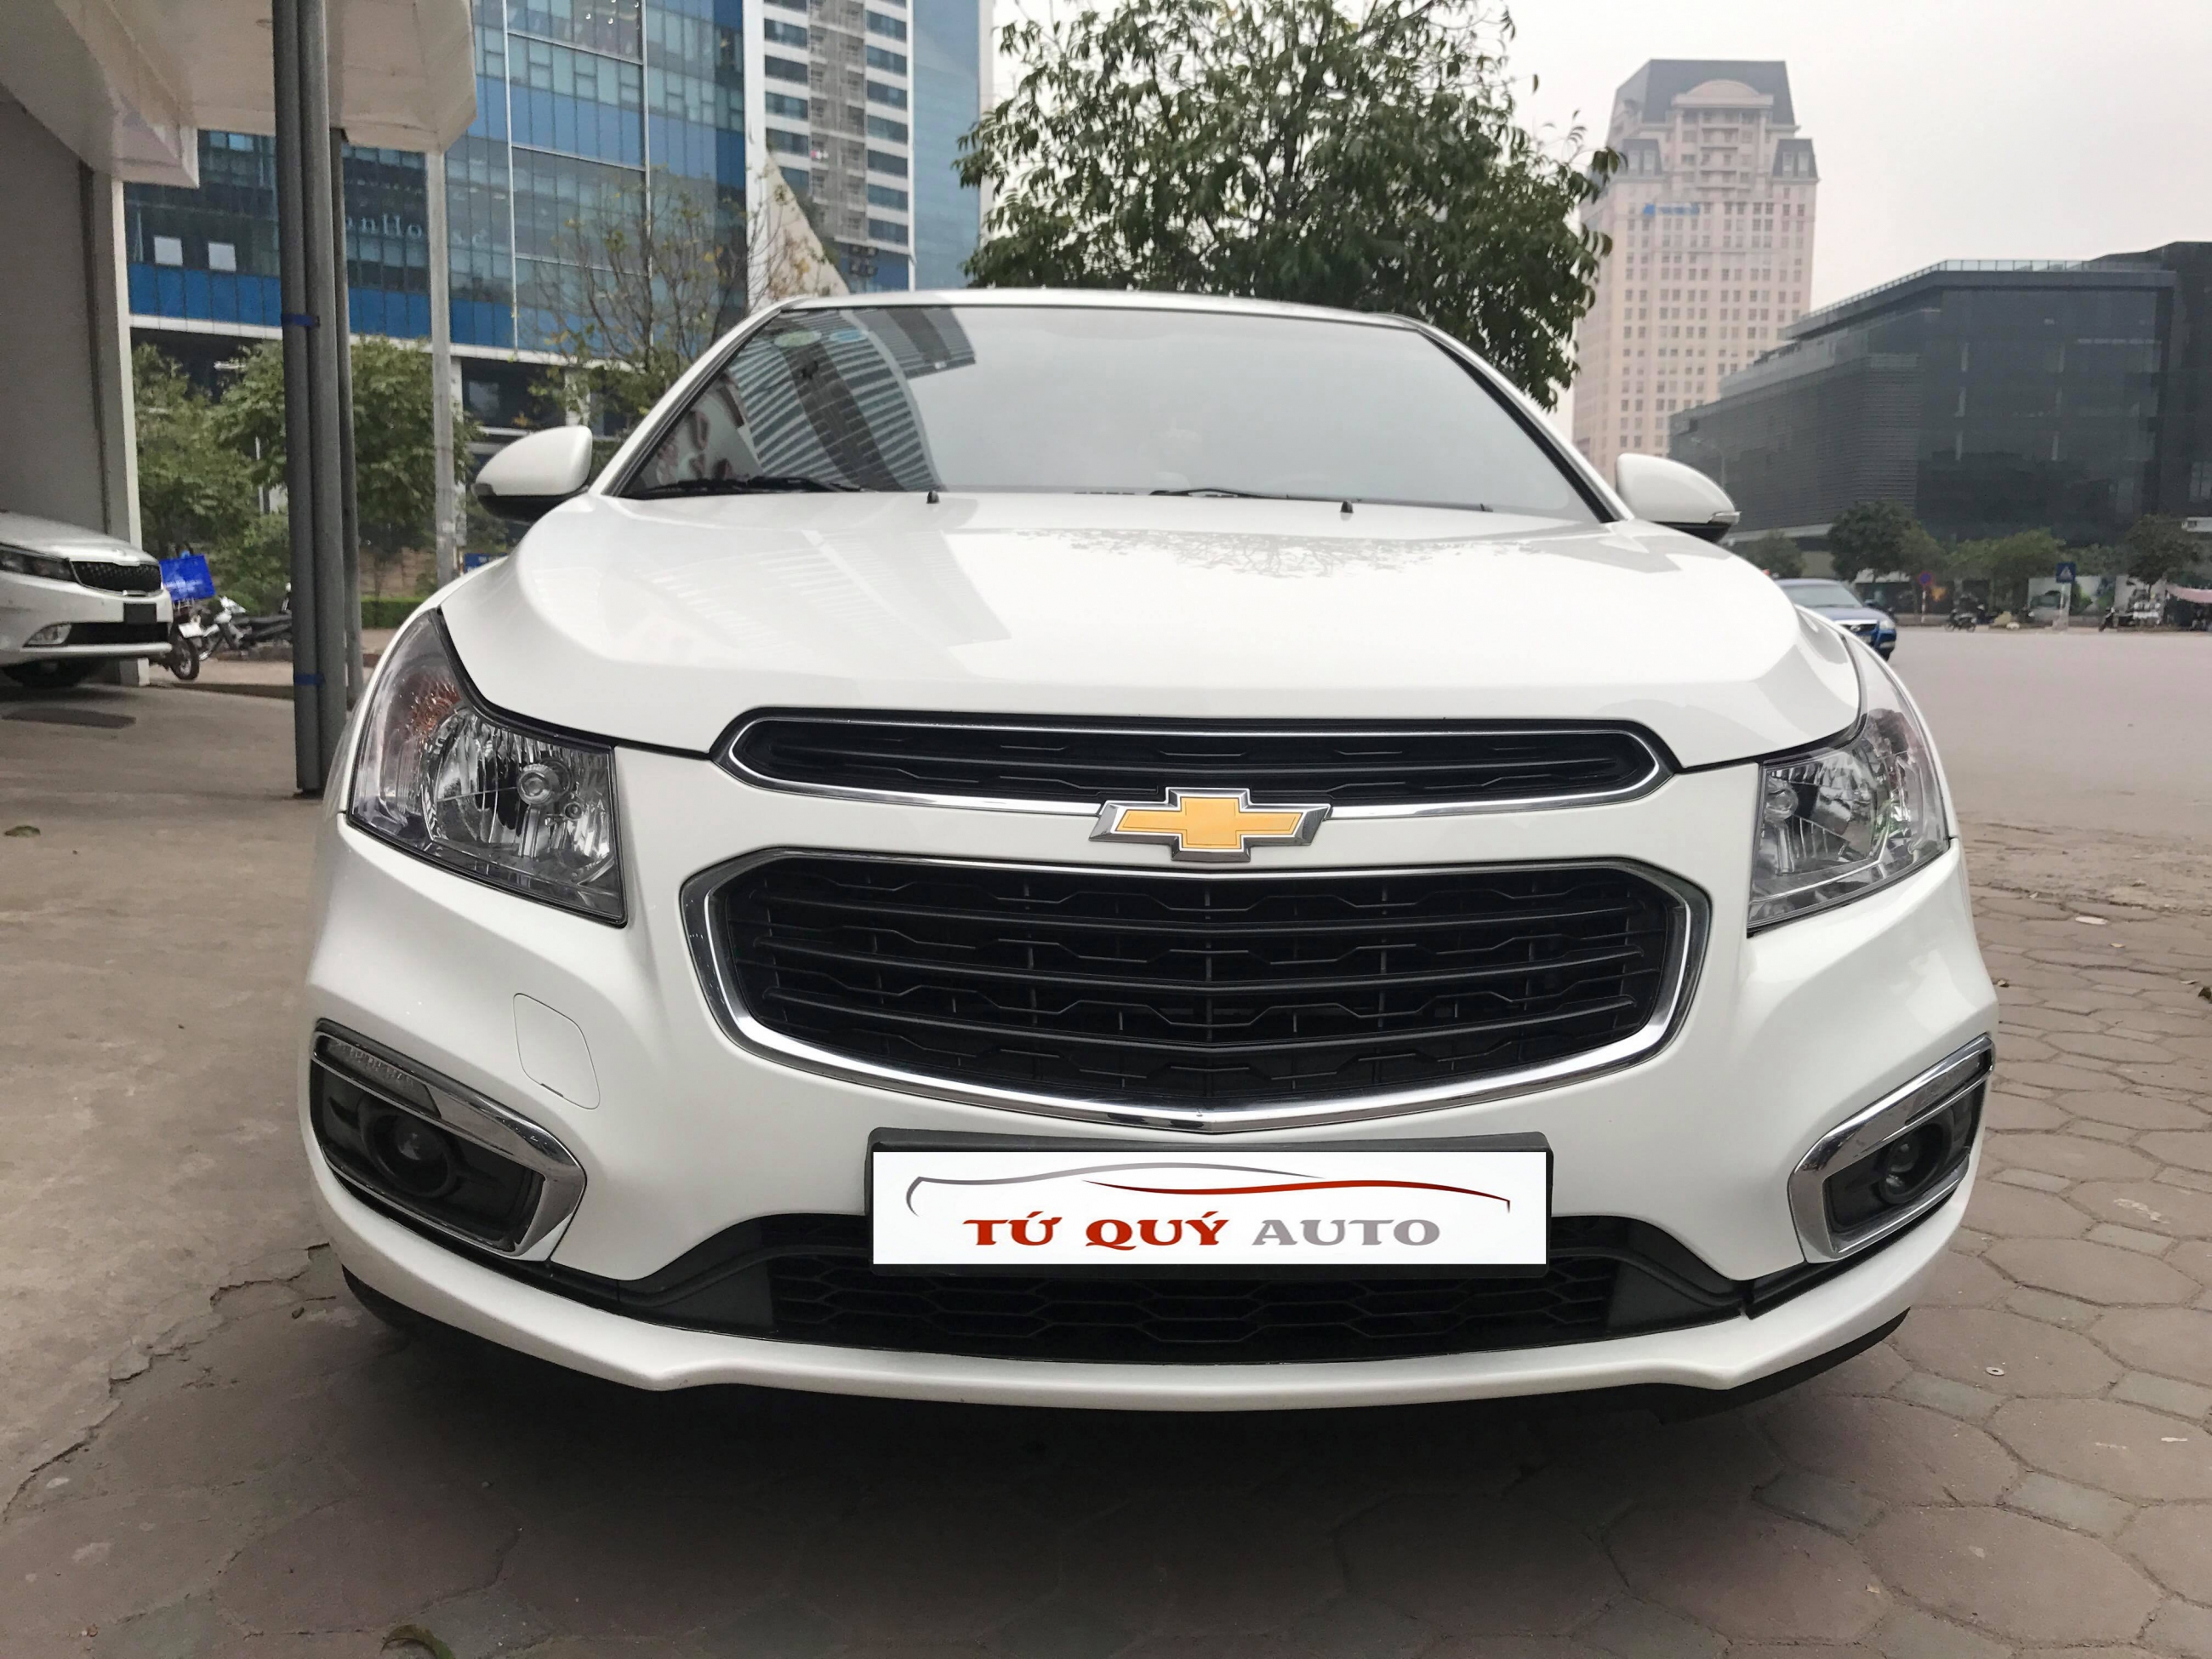 Chevrolet Cruze LTZ Bản full 2017 đây có phải là mẫu xe đô thị  Xuân Quyết  ÔTô long biên 0365639999  YouTube